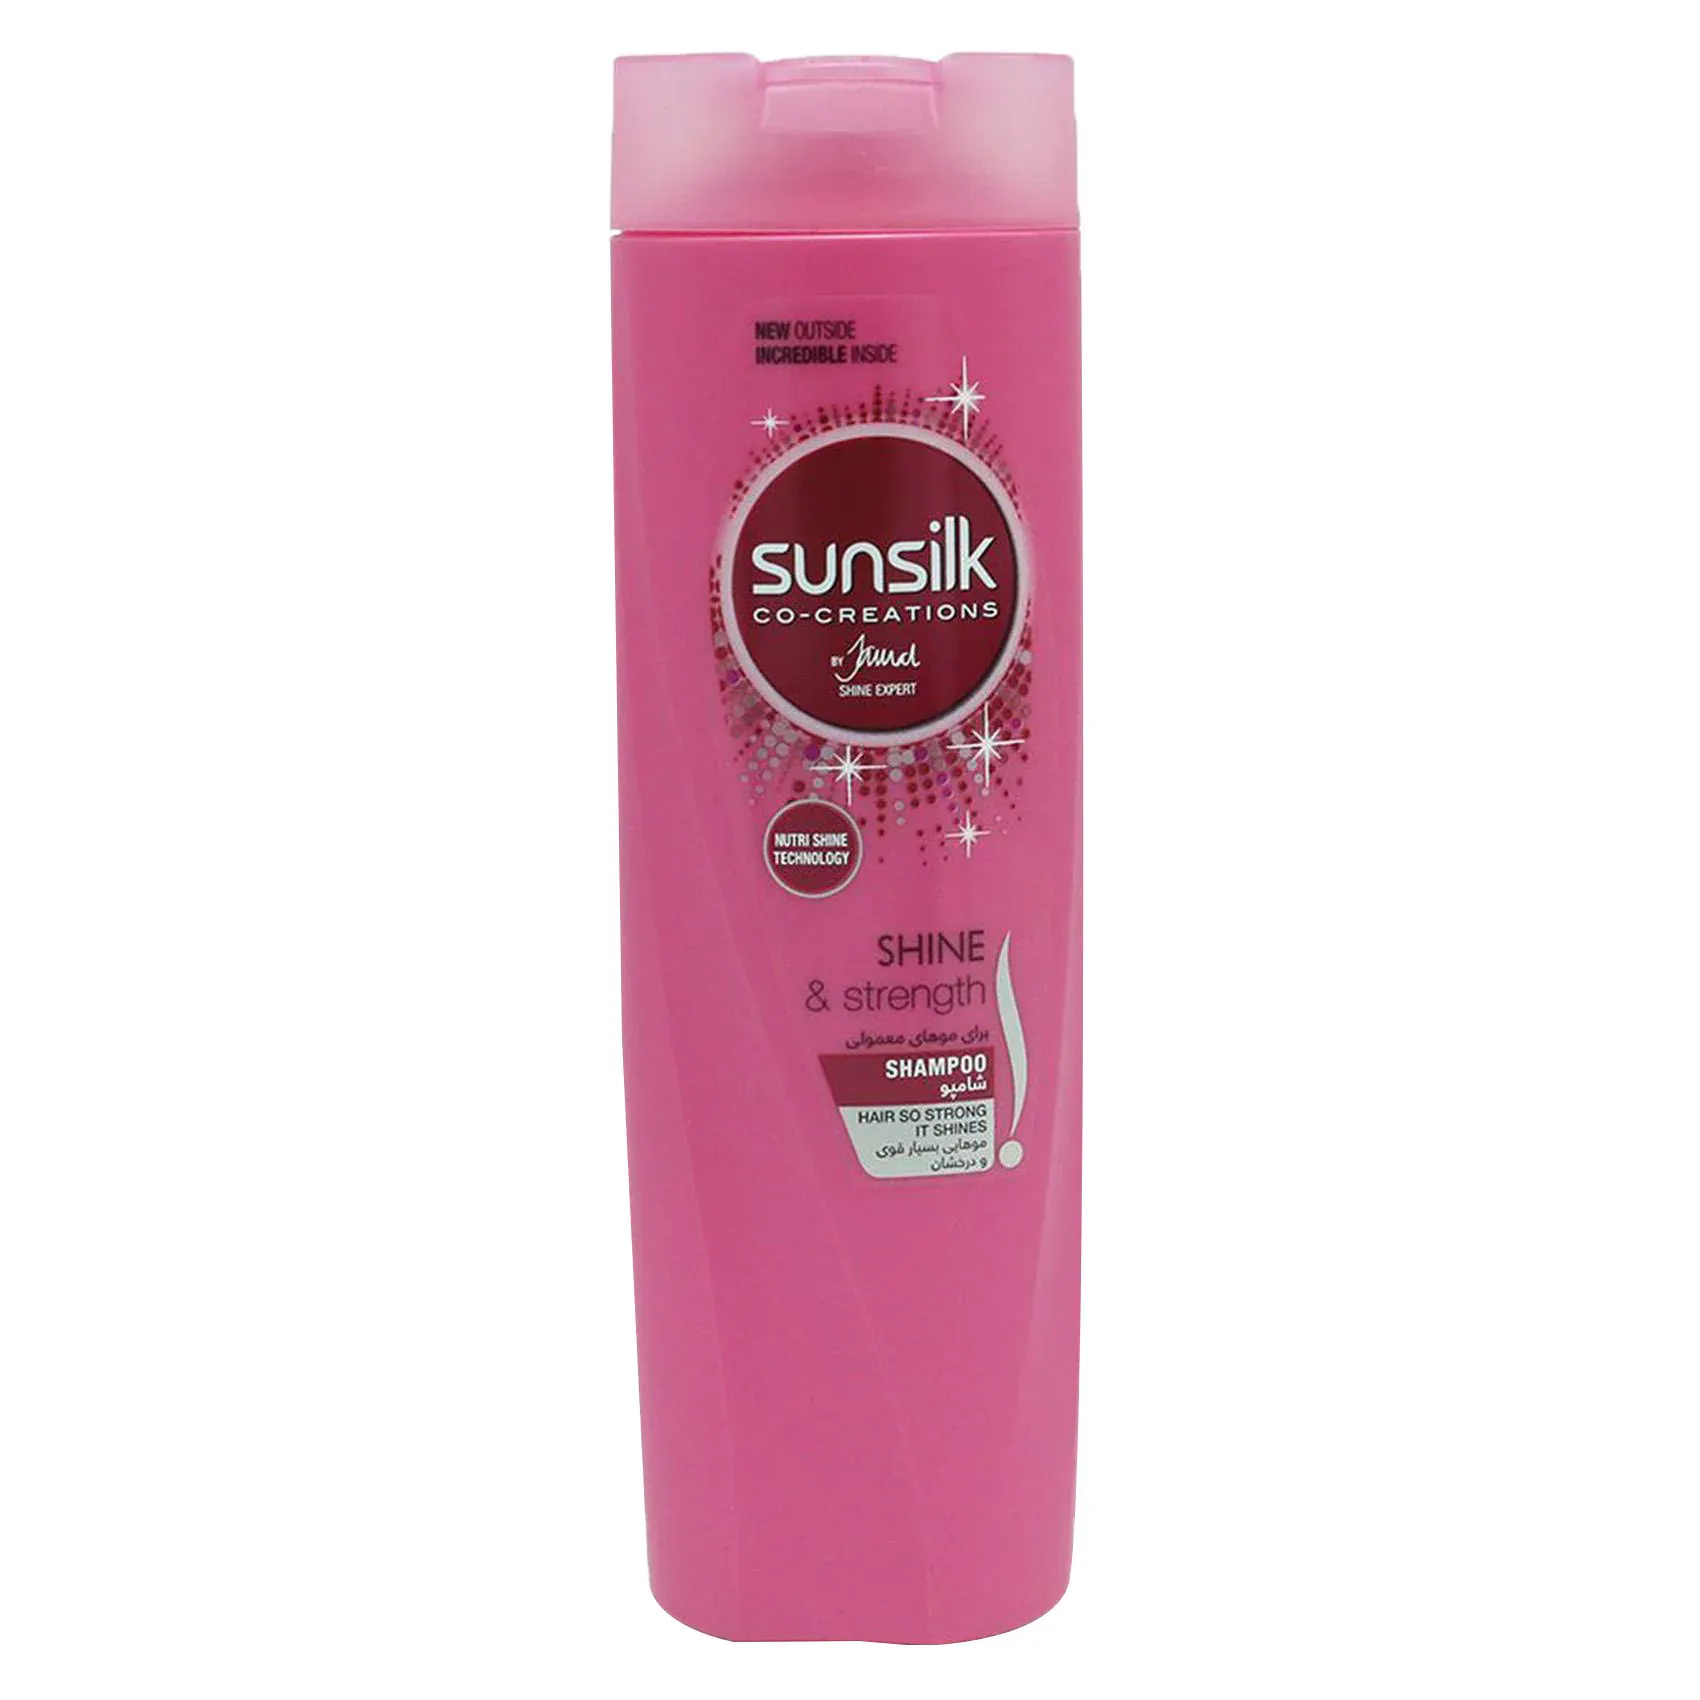 Sunsilk | Shampoo Shine & Strength | 350ml - Chefaa